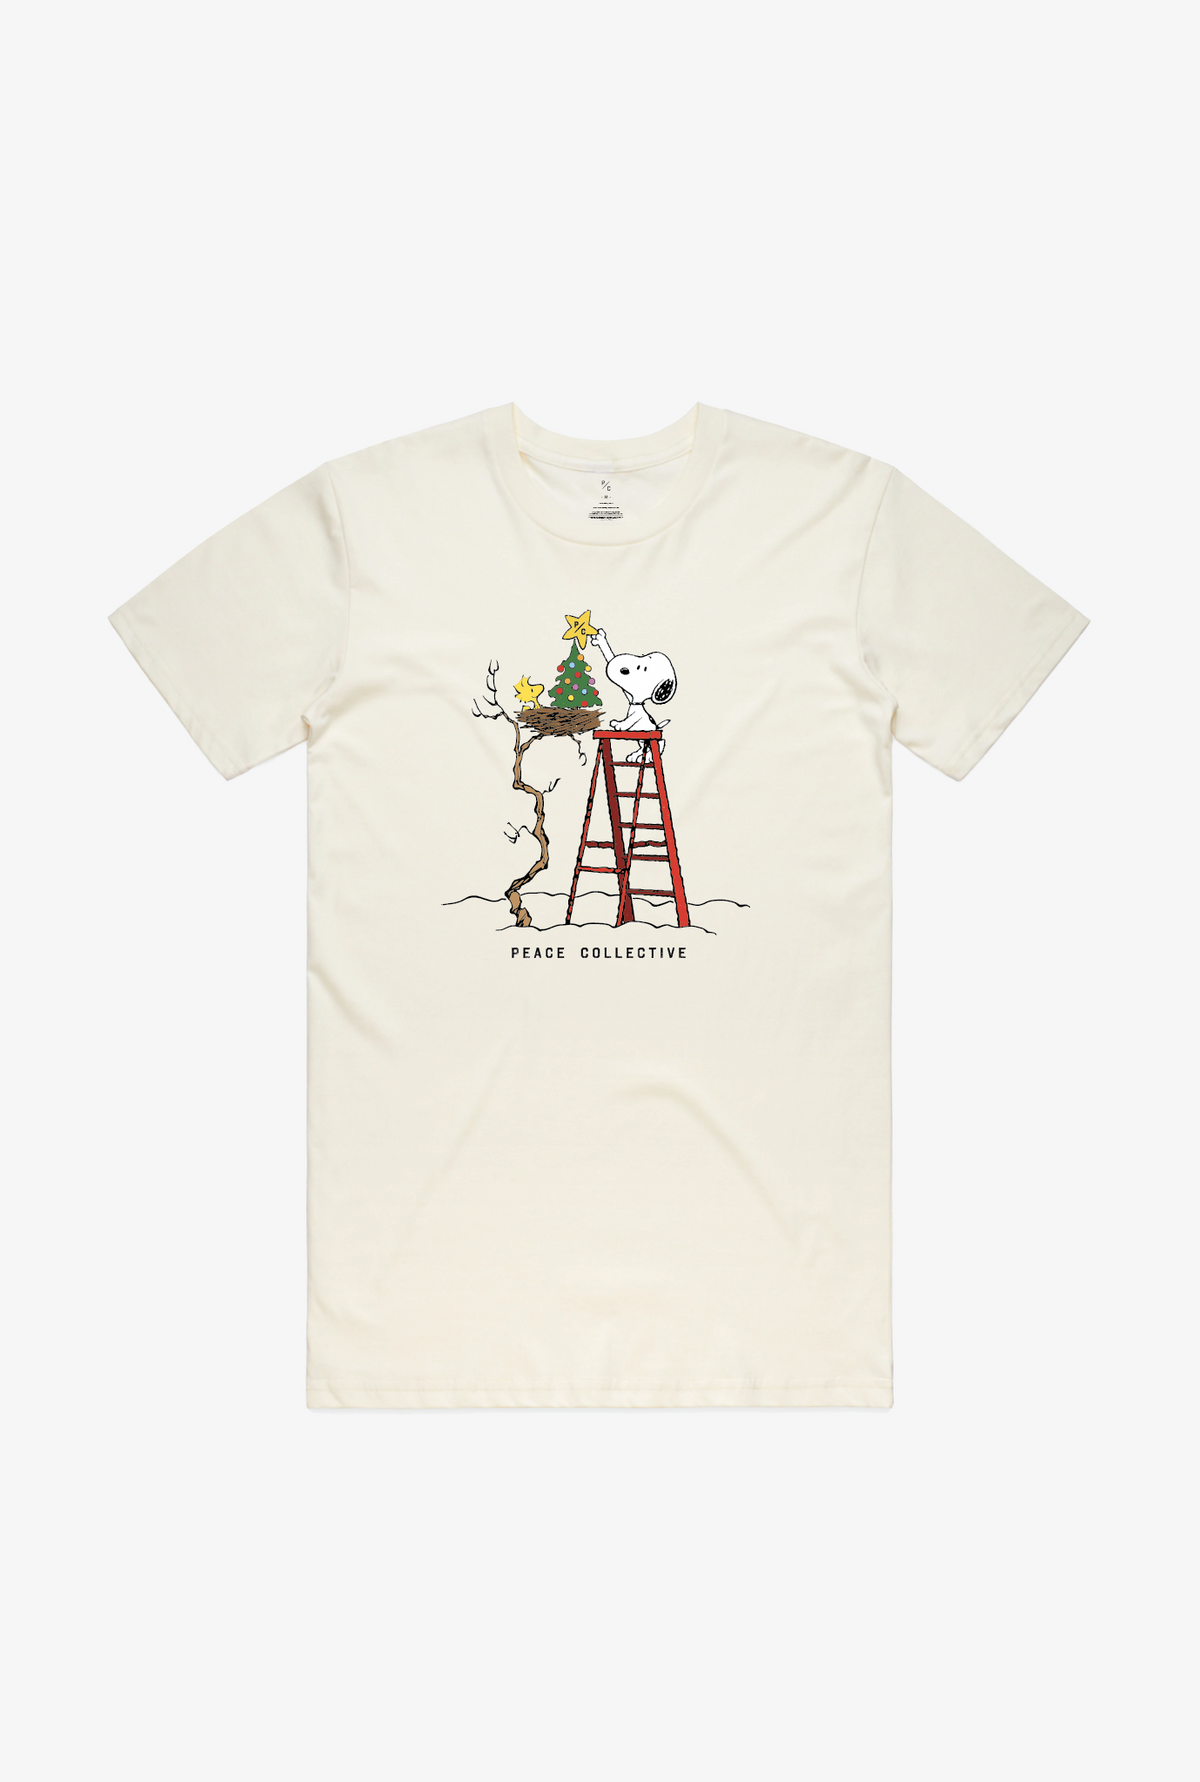 P/C x Peanuts Snoopy Ladder T-Shirt - Ivory